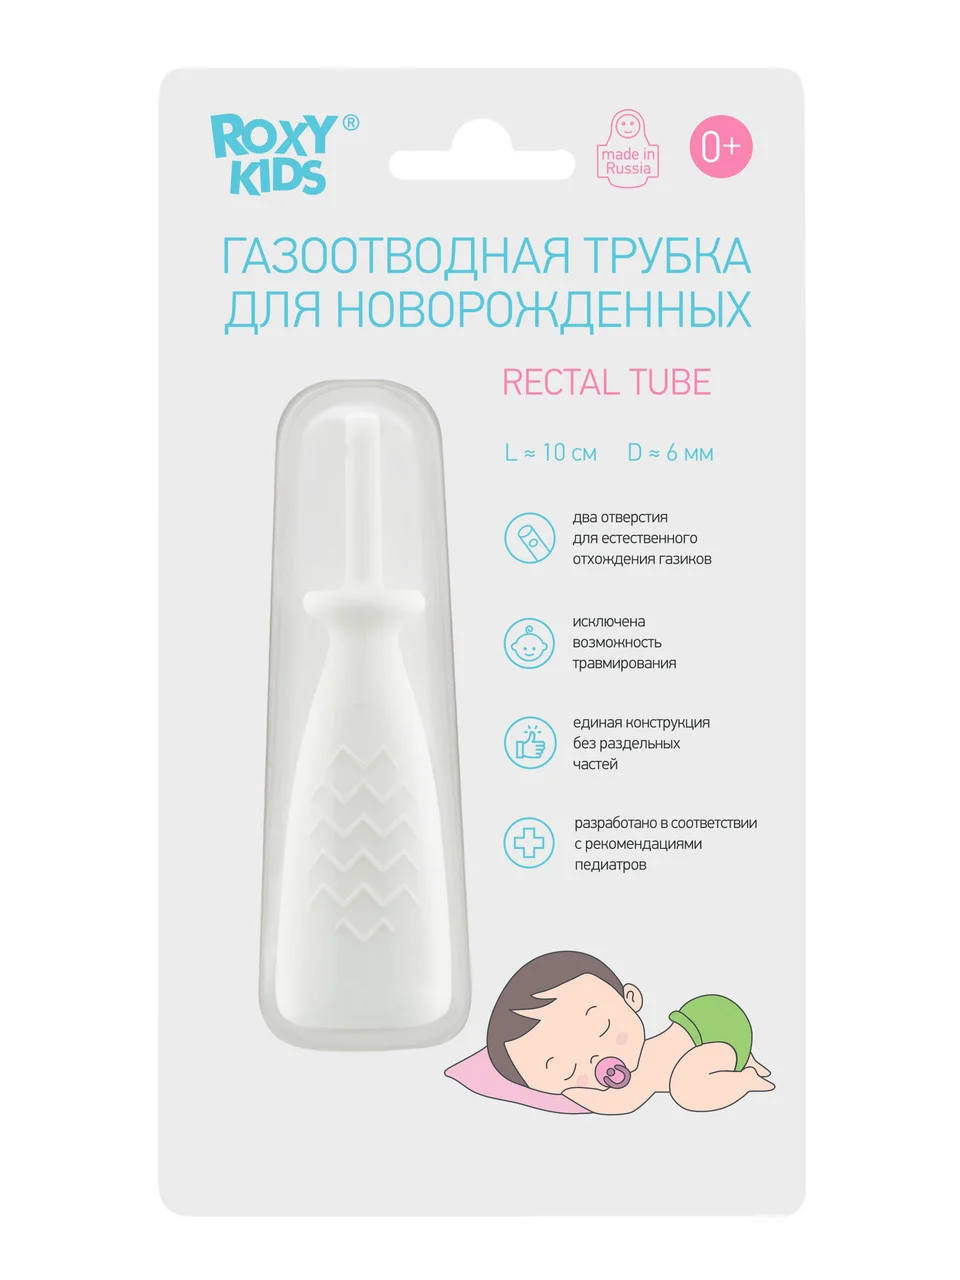 Roxy Кids Трубка газоотводная для новорожденных РФ (белая, дизайн дуги)